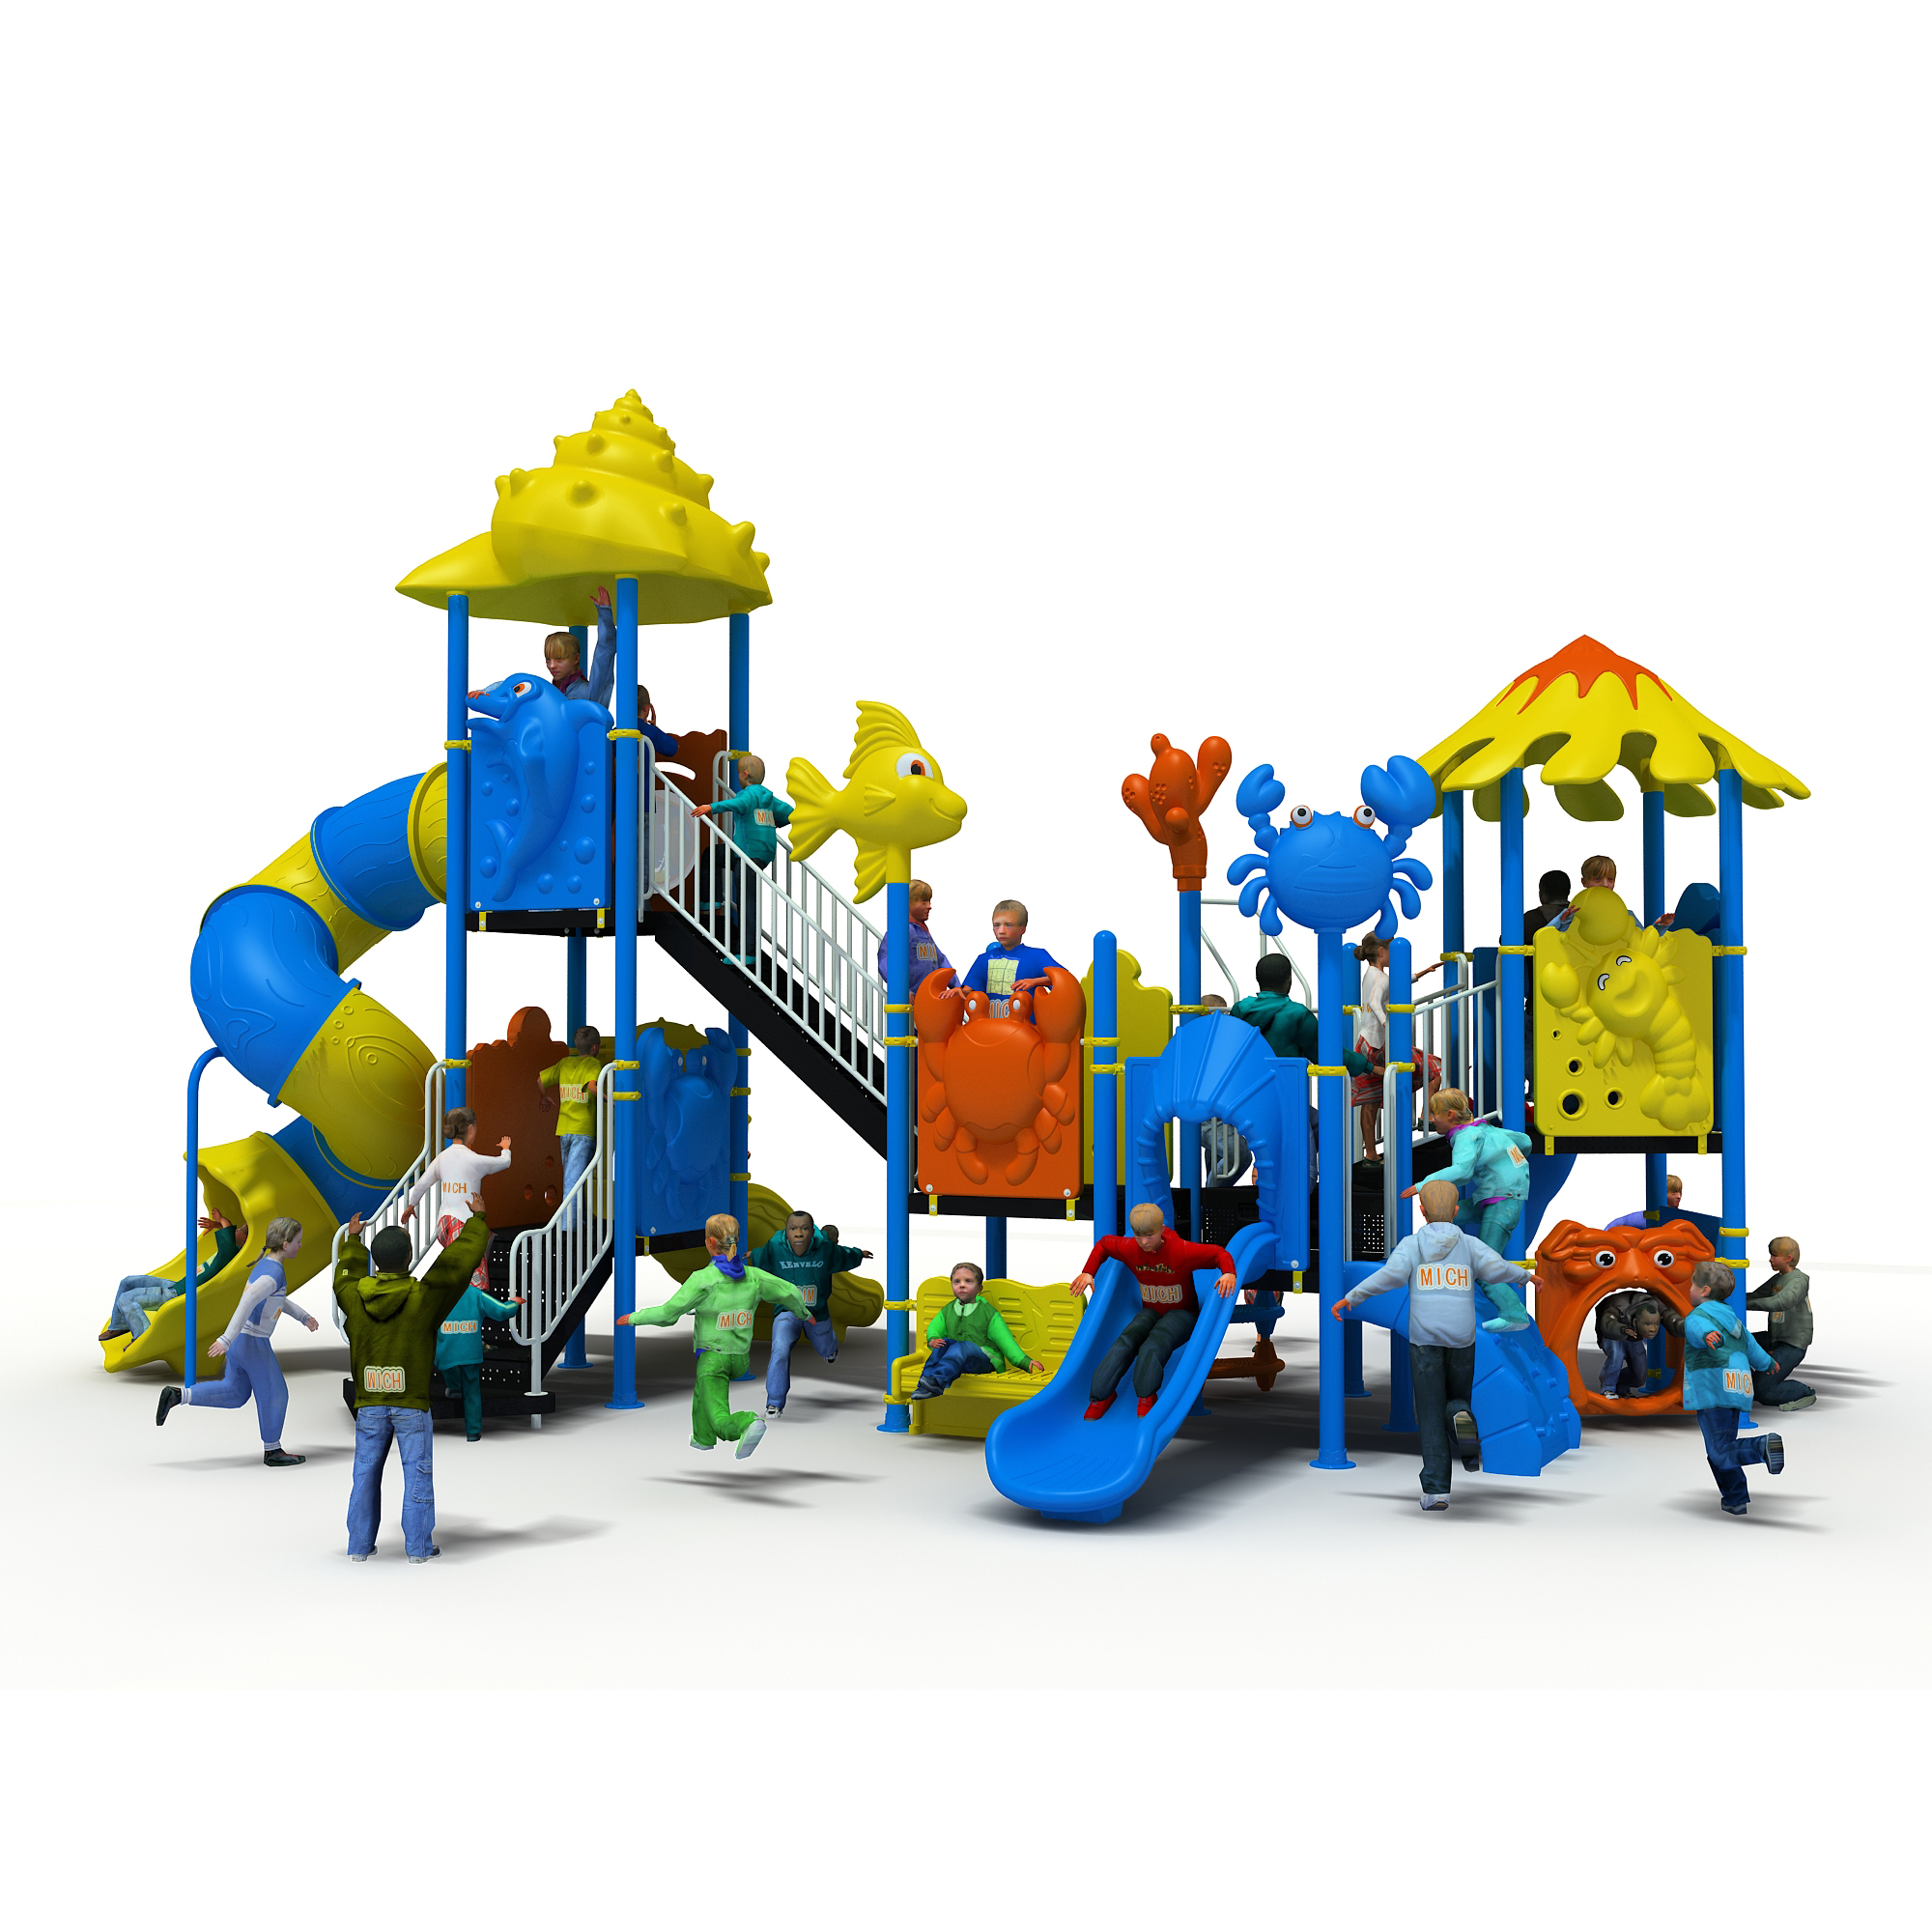 Açık Gyer Playground'ınızı Nasıl Yapabilirsiniz?